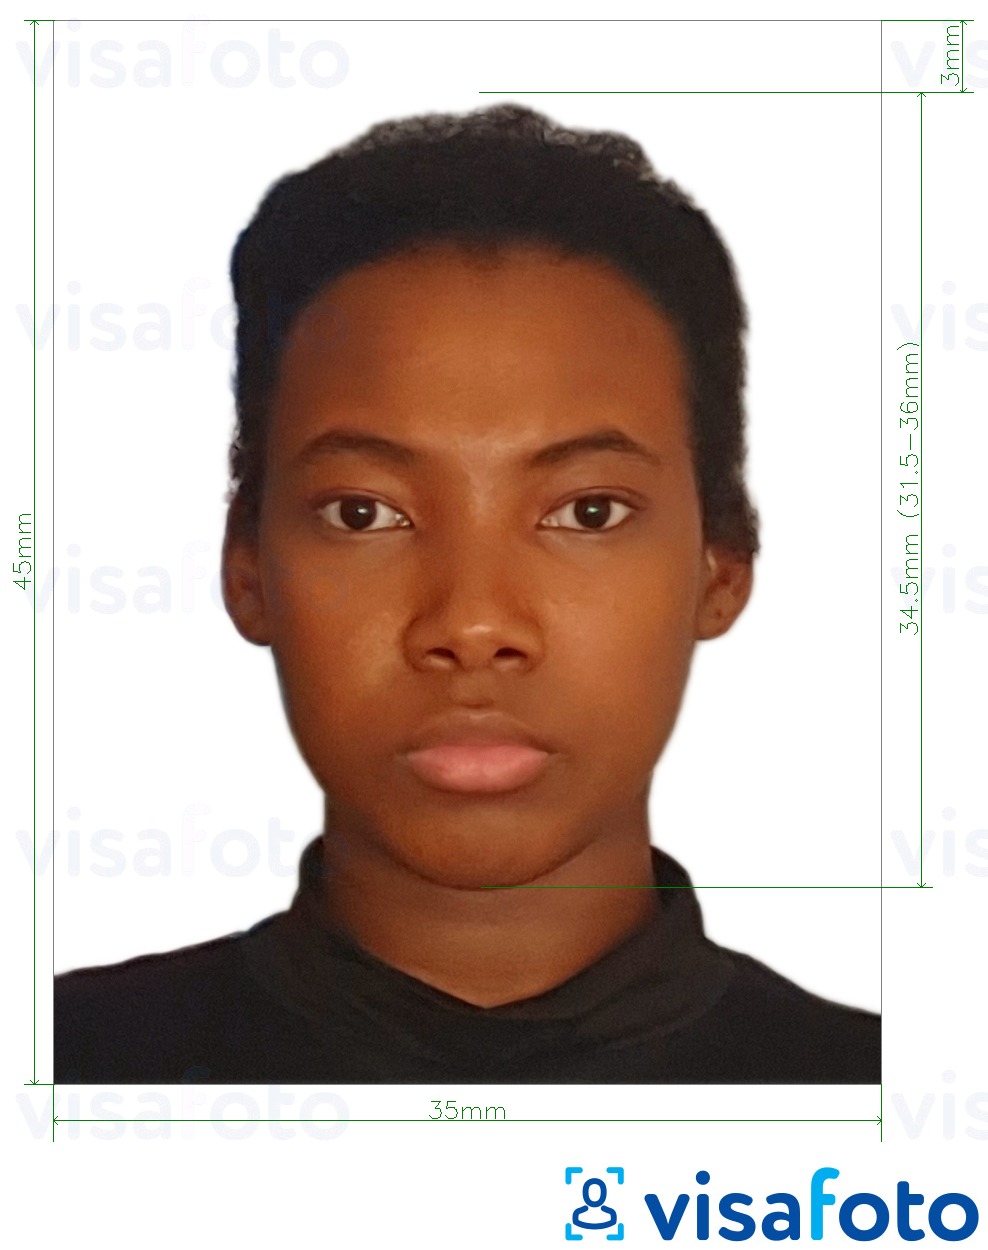  Kongo Demokraatliku Vabariigi pass 35x45 mm (3,5x4,5 cm) fotonäidis koos täpse infoga mõõtude kohta.